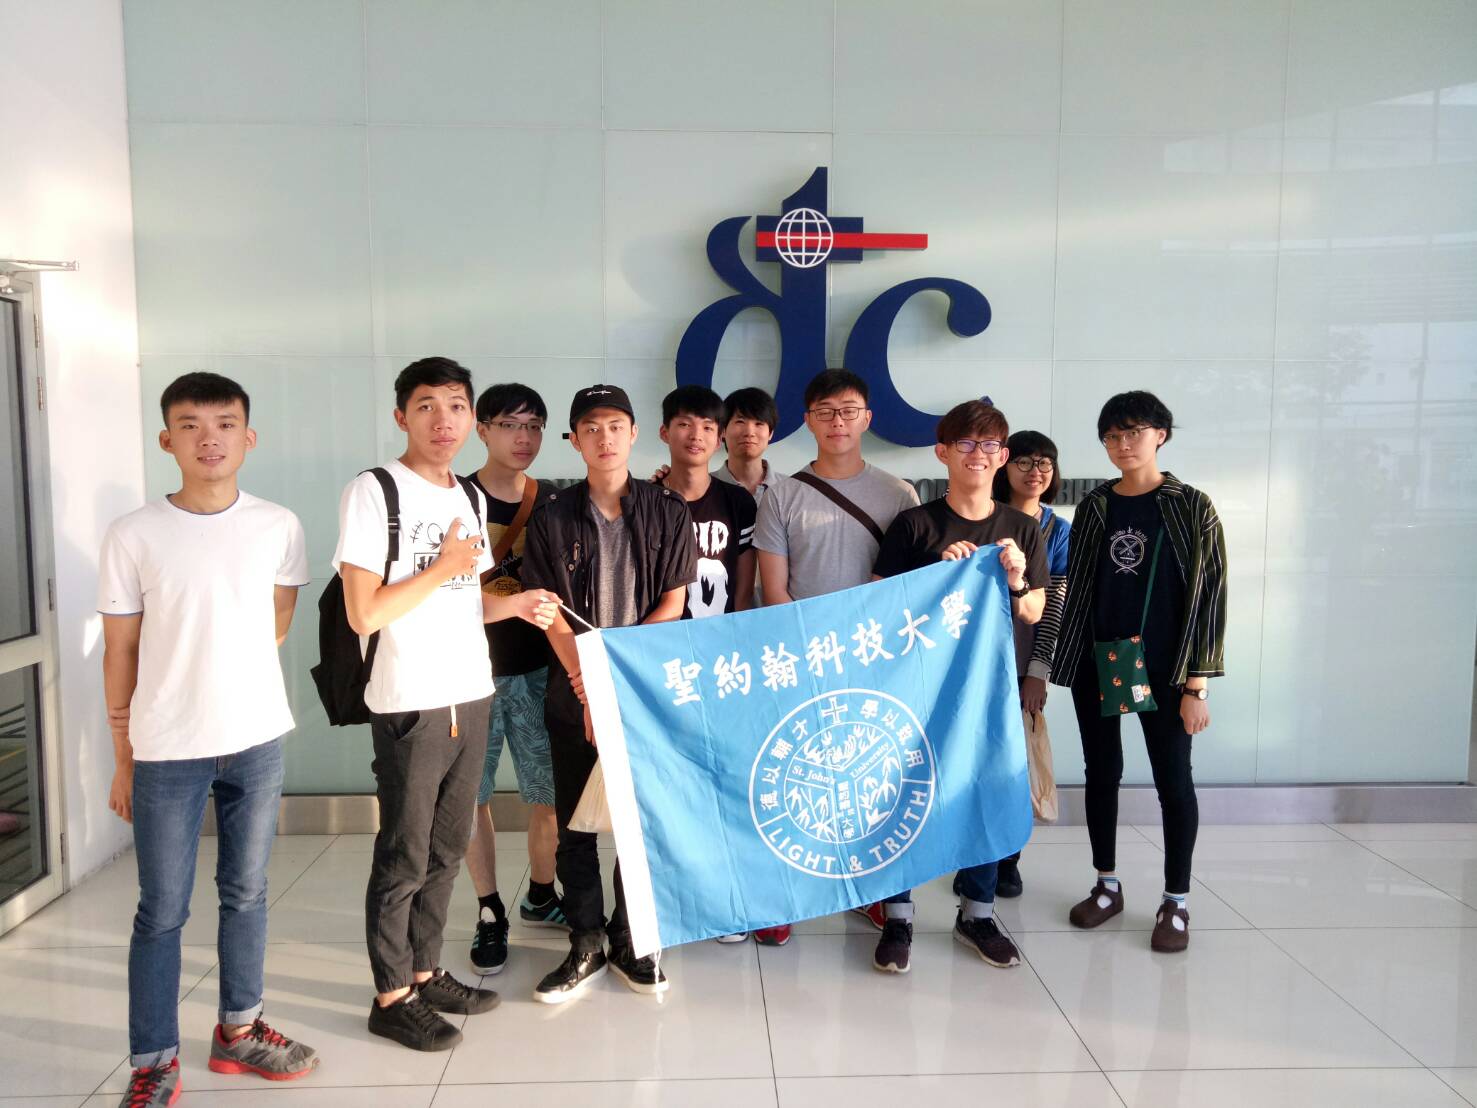 今年共有5位台灣學生與5位馬來西亞學生赴檳城杜甫科技實習